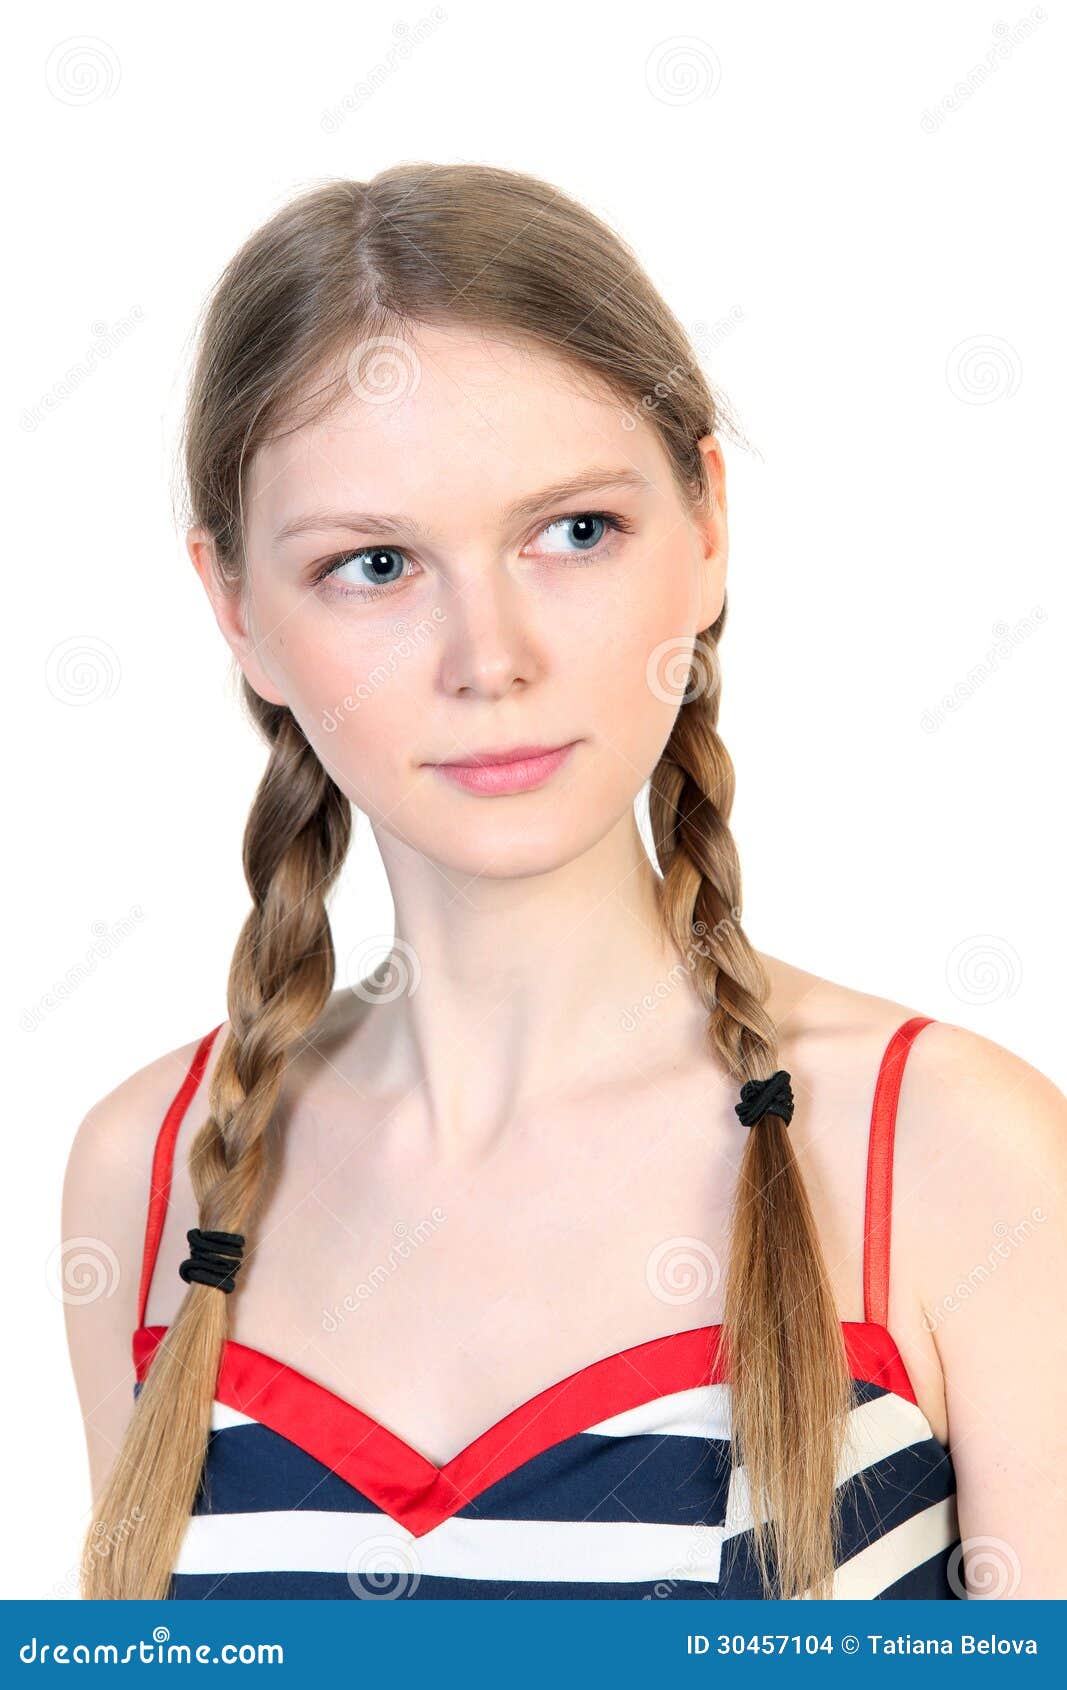 brianna cortazar share blonde girl with braids photos